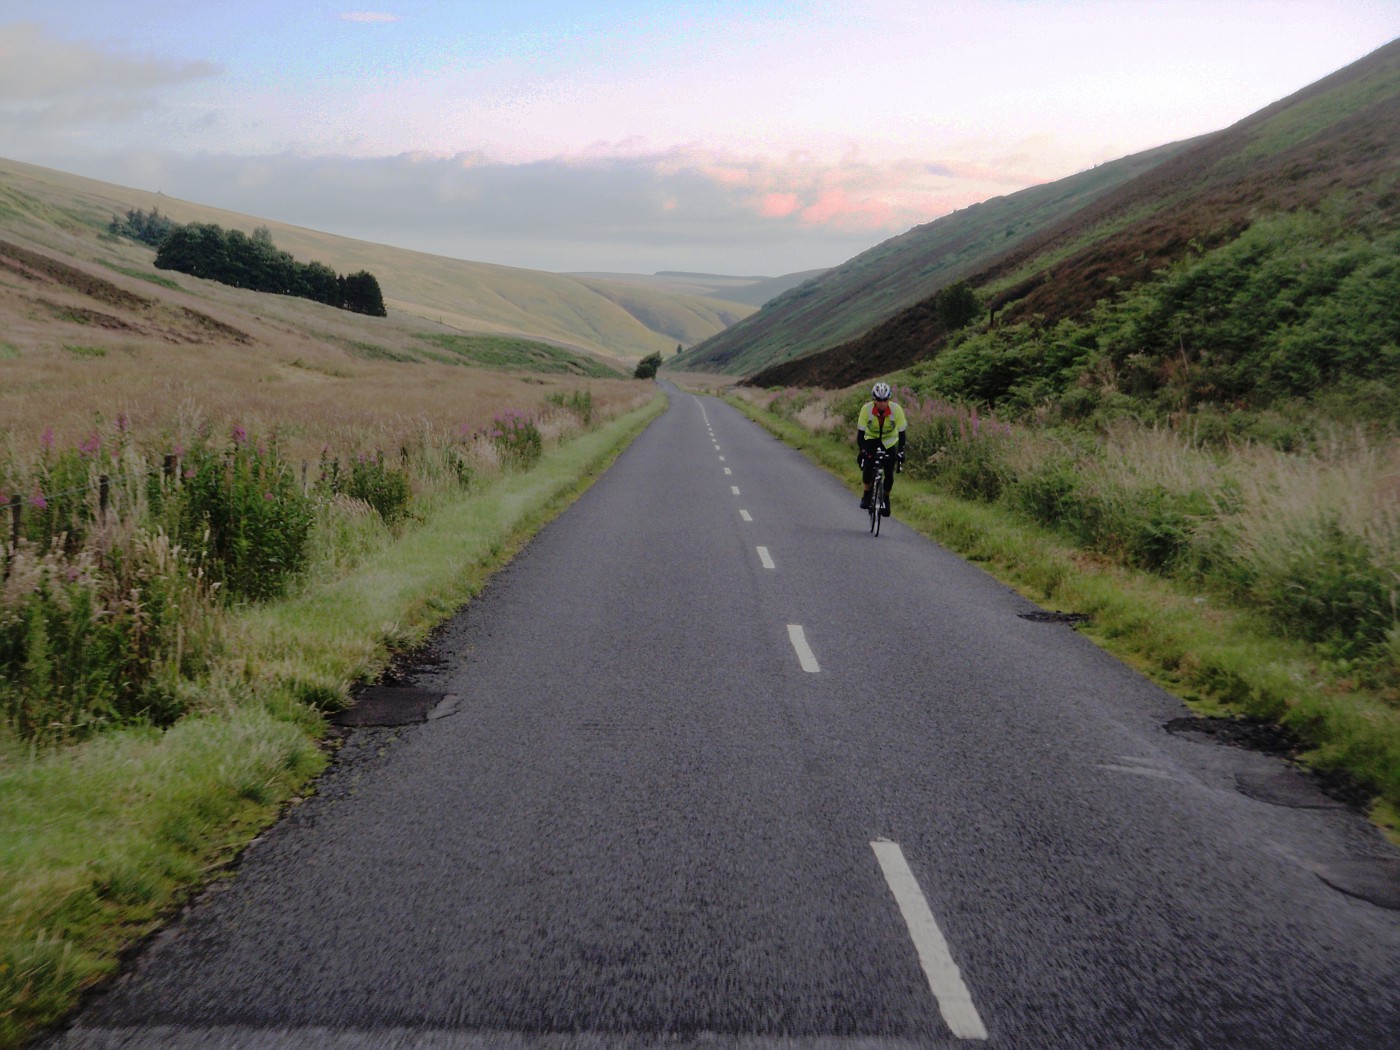 Road through Scottish hills